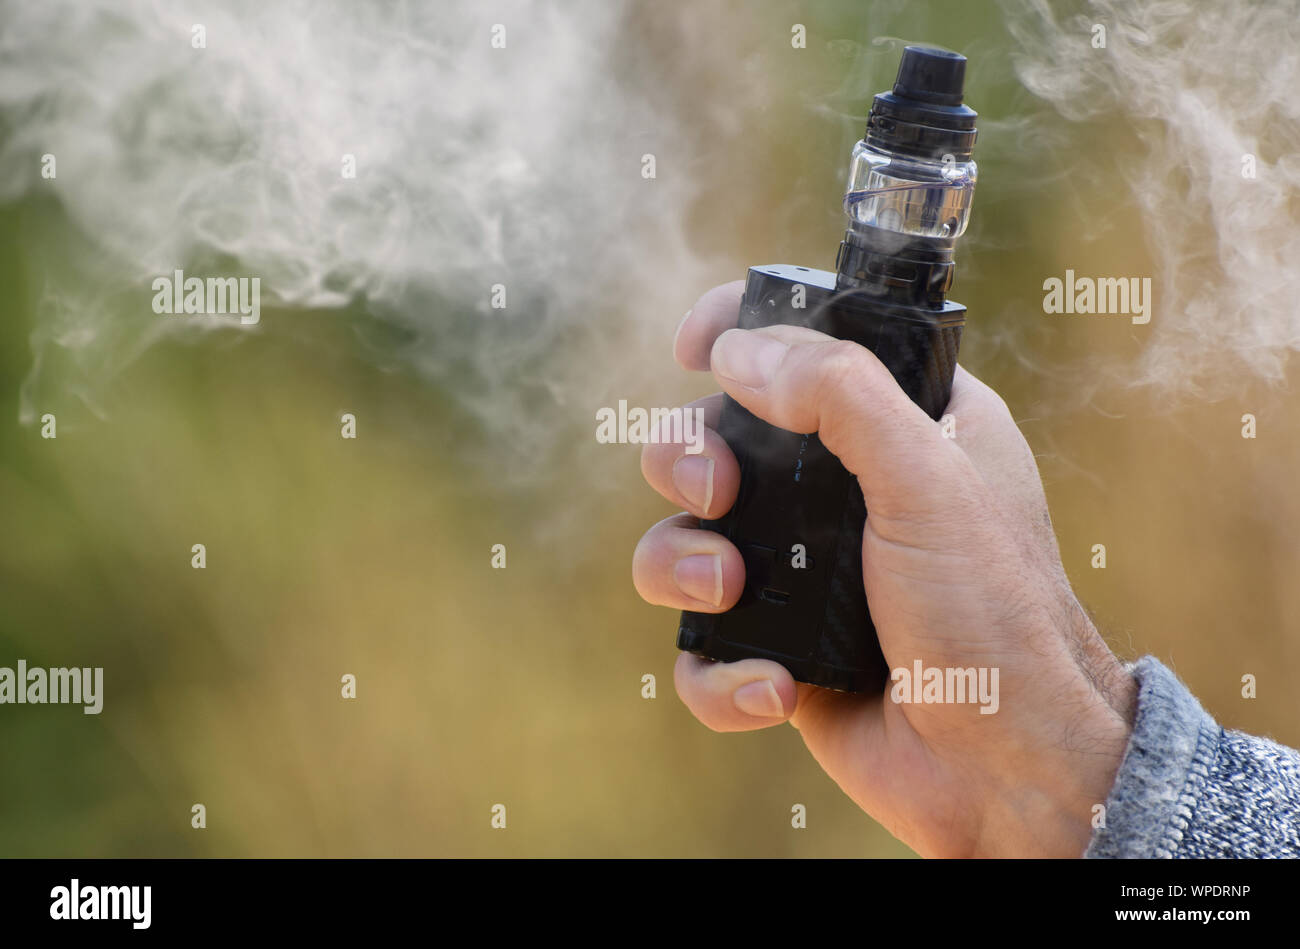 Ein vaping Mod in die Hand eines Mannes mit vaping Nebel Umgebung gehalten Stockfoto